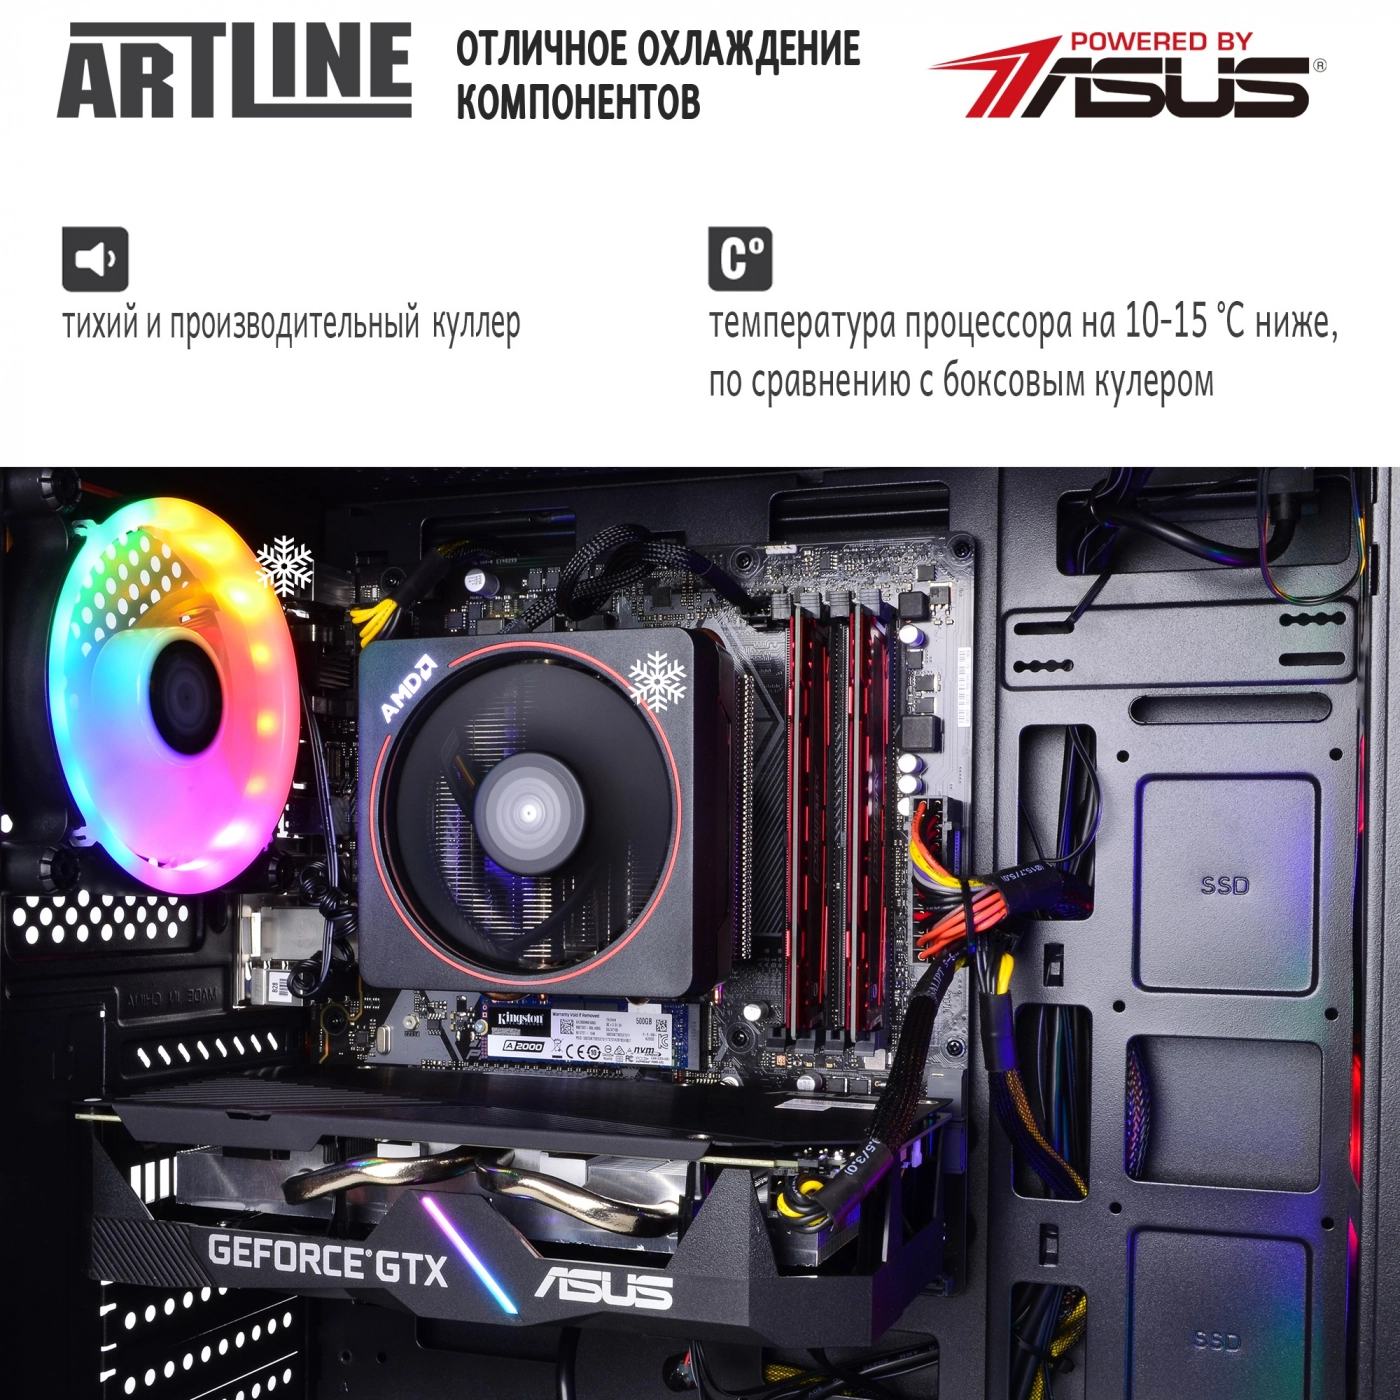 Купить Компьютер ARTLINE Gaming X46v35 - фото 6